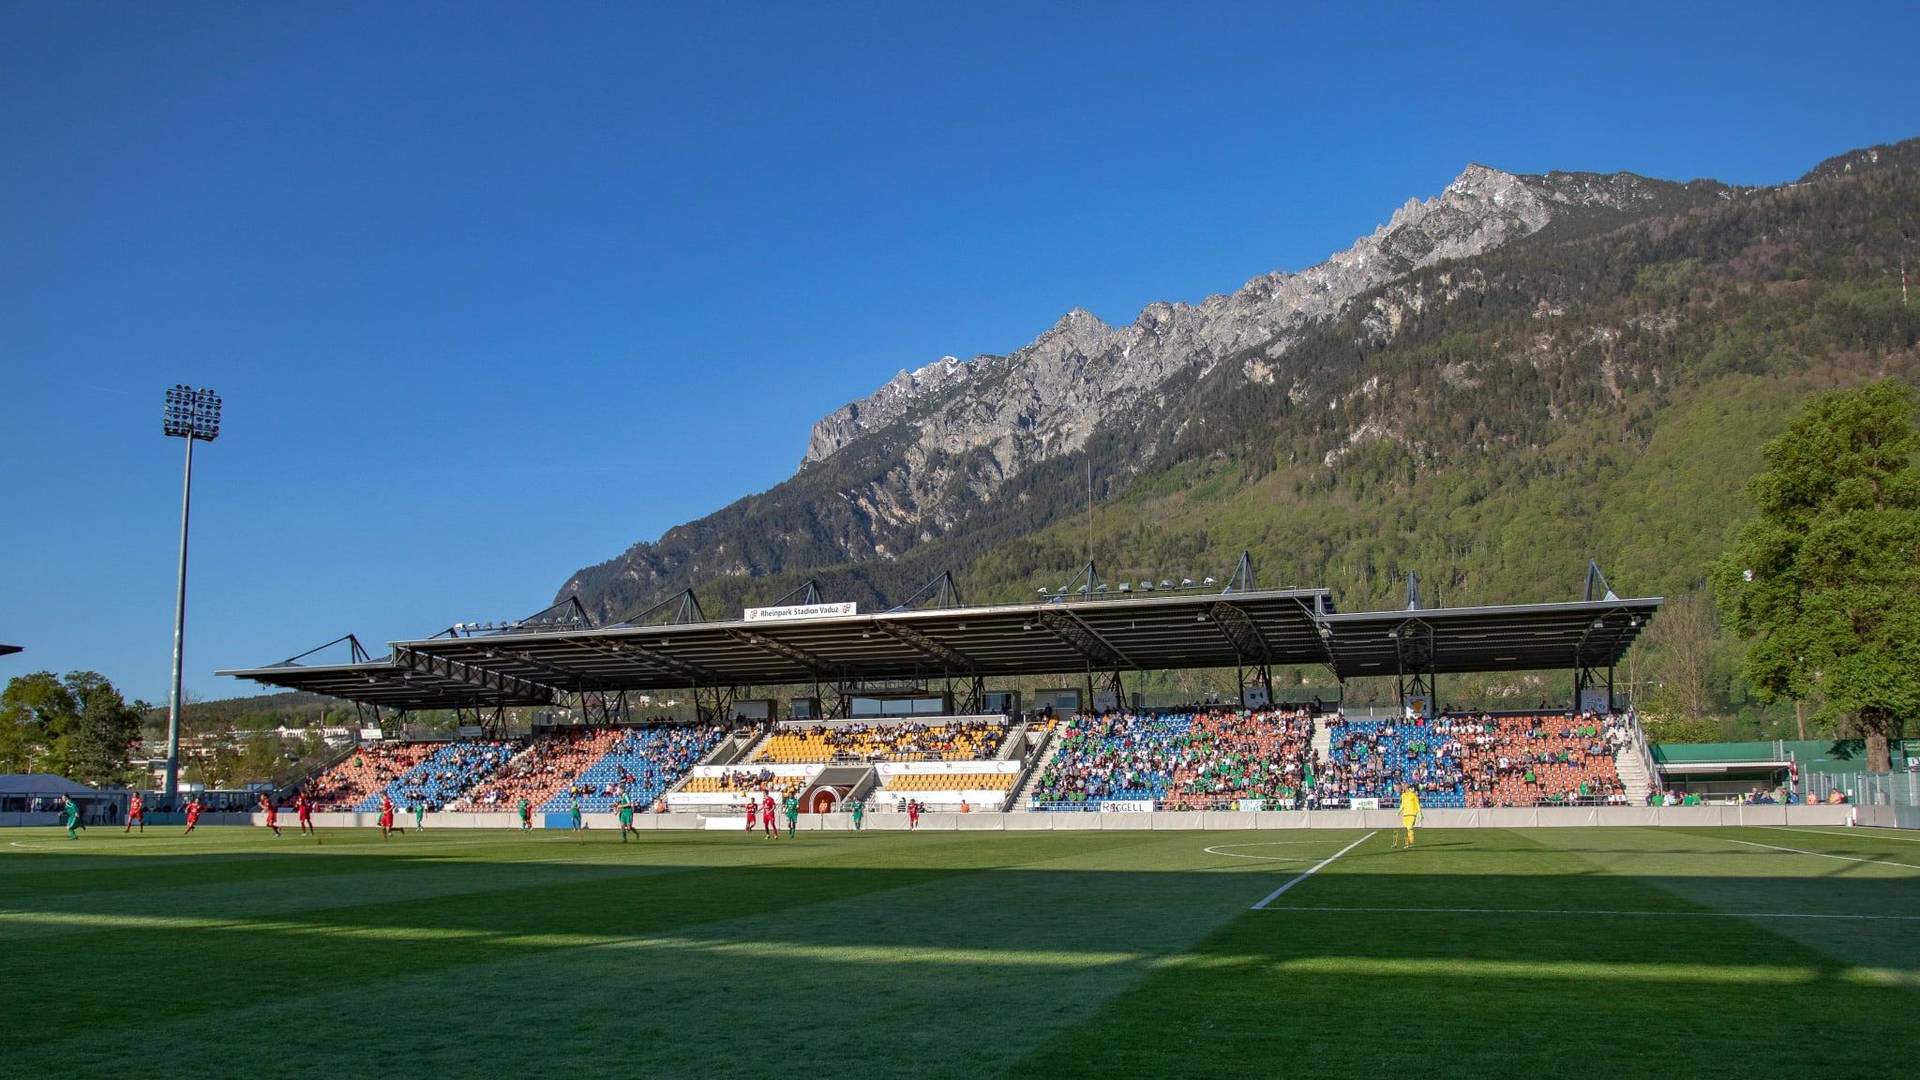 Liechtenstein Rheinpark Stadium